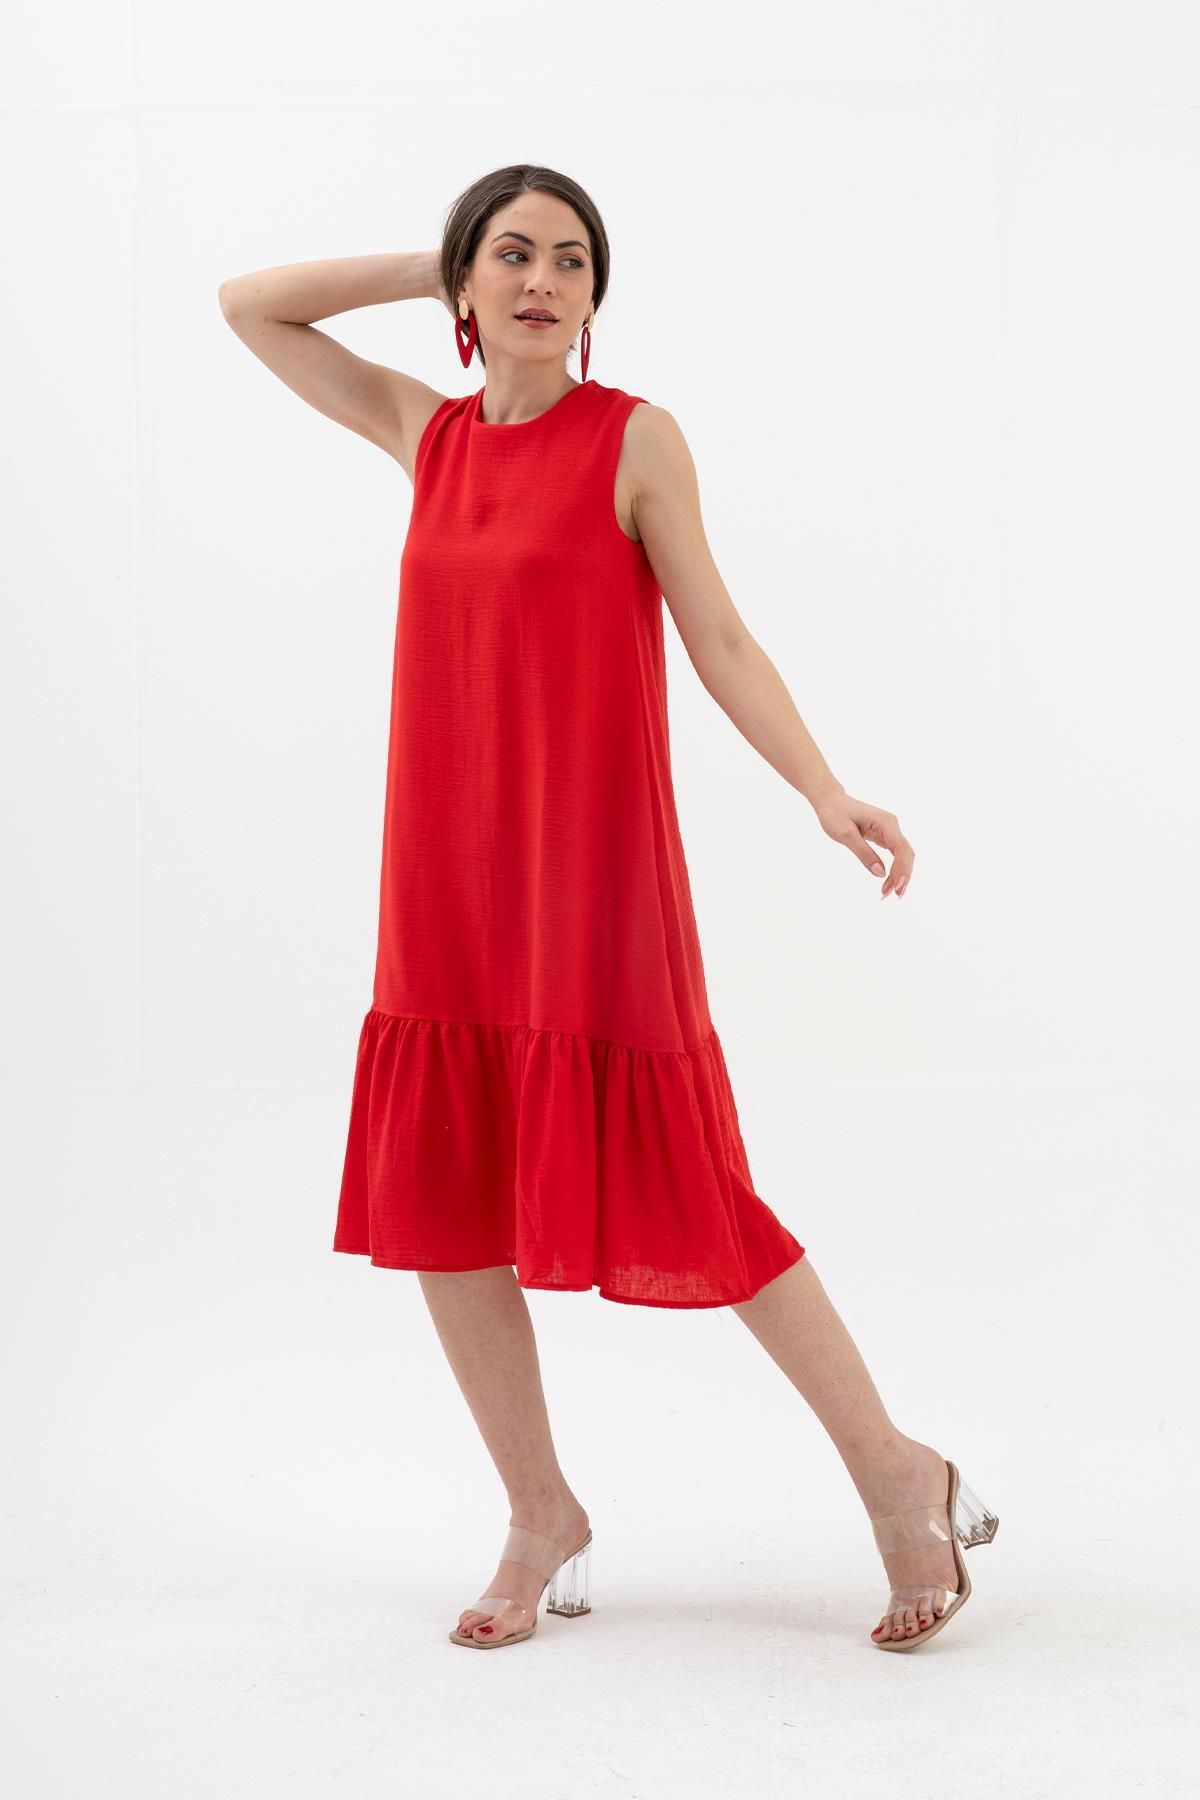 VAPUR TEKSTİL Kristal Keten Kolsuz Kadın Salaş Elbise - Kırmızı